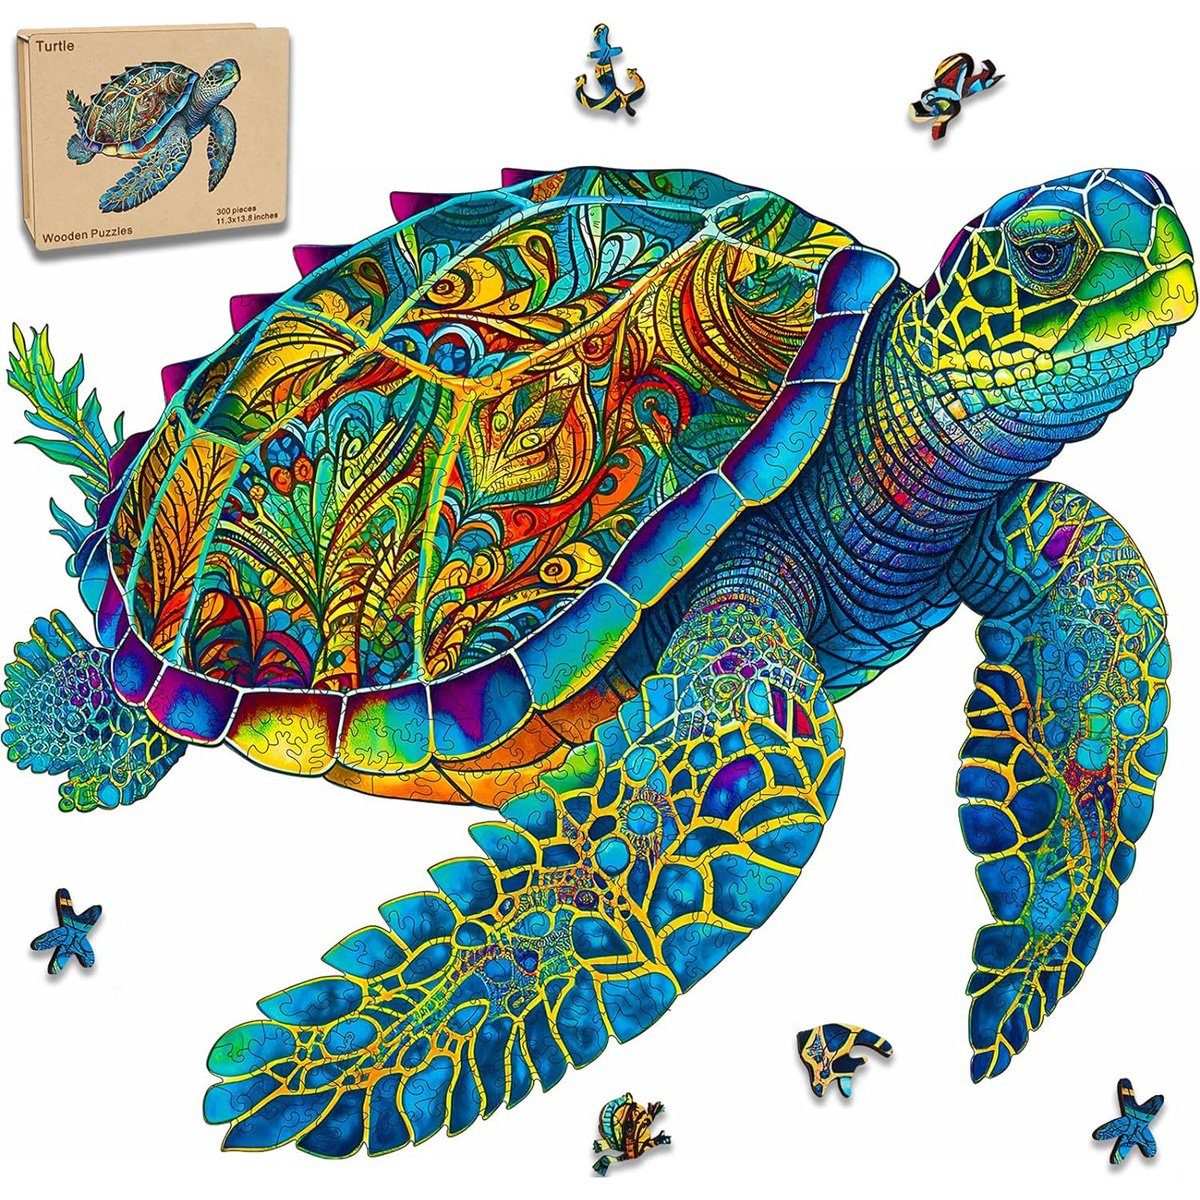 yozhiqu Puzzle Holzpuzzle, Schildkrötenpuzzle 200 Teile, Puzzleteile, Einzigartig geformte Holzpuzzles für Erwachsene und Kinder